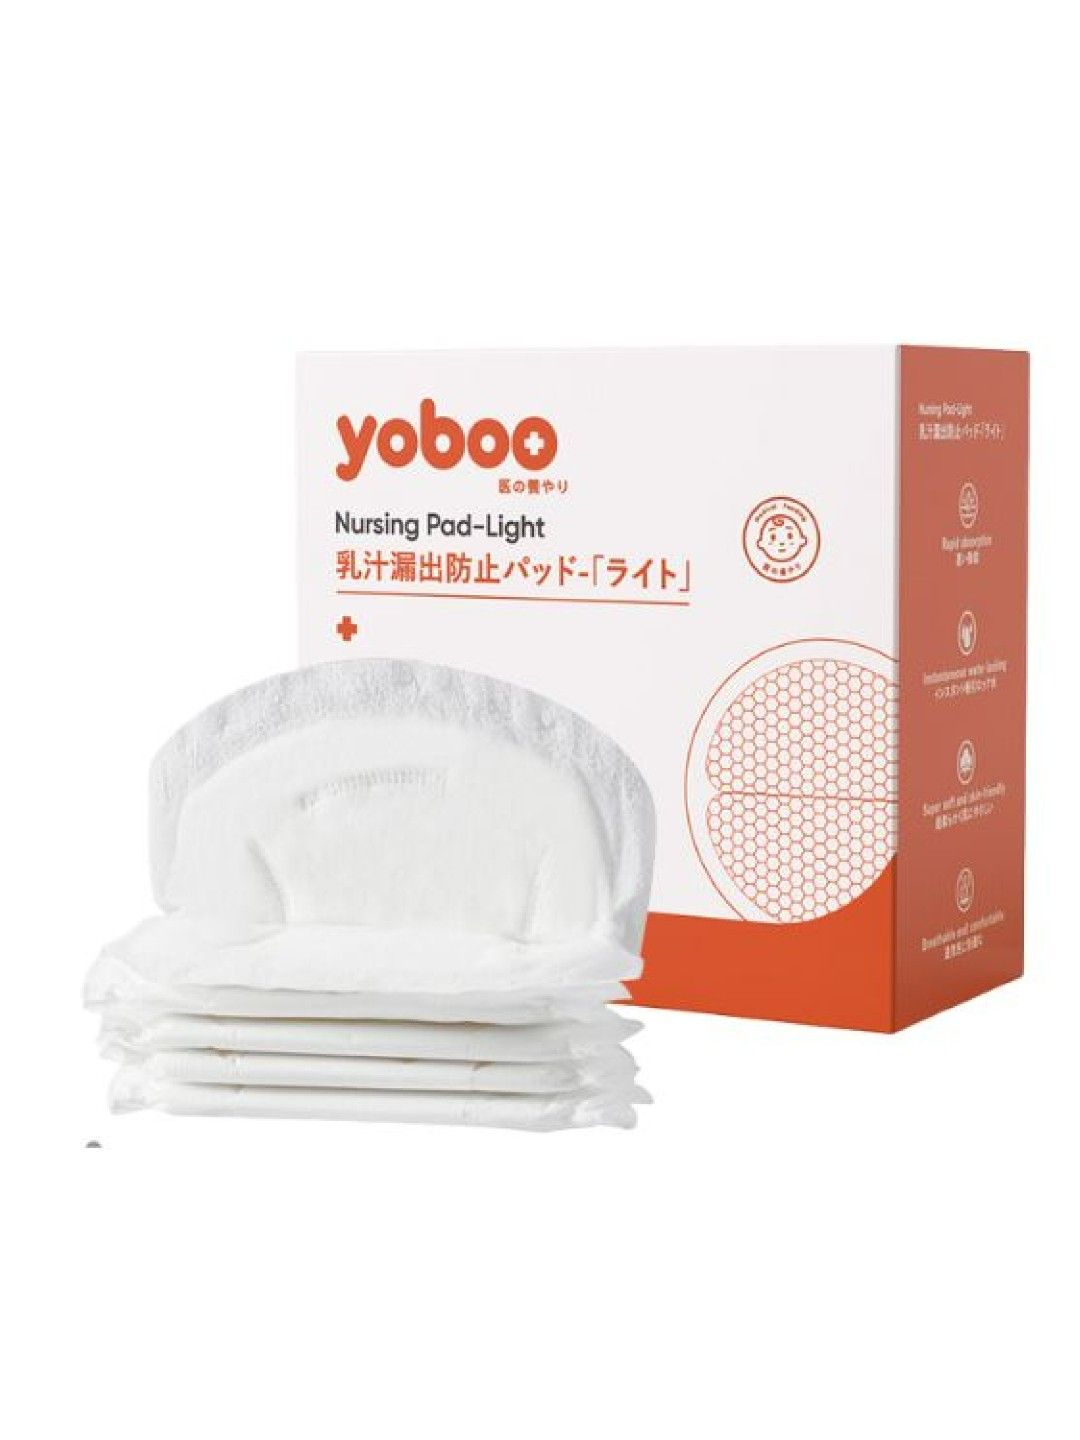 Yoboo Nursing Pad Light 30's